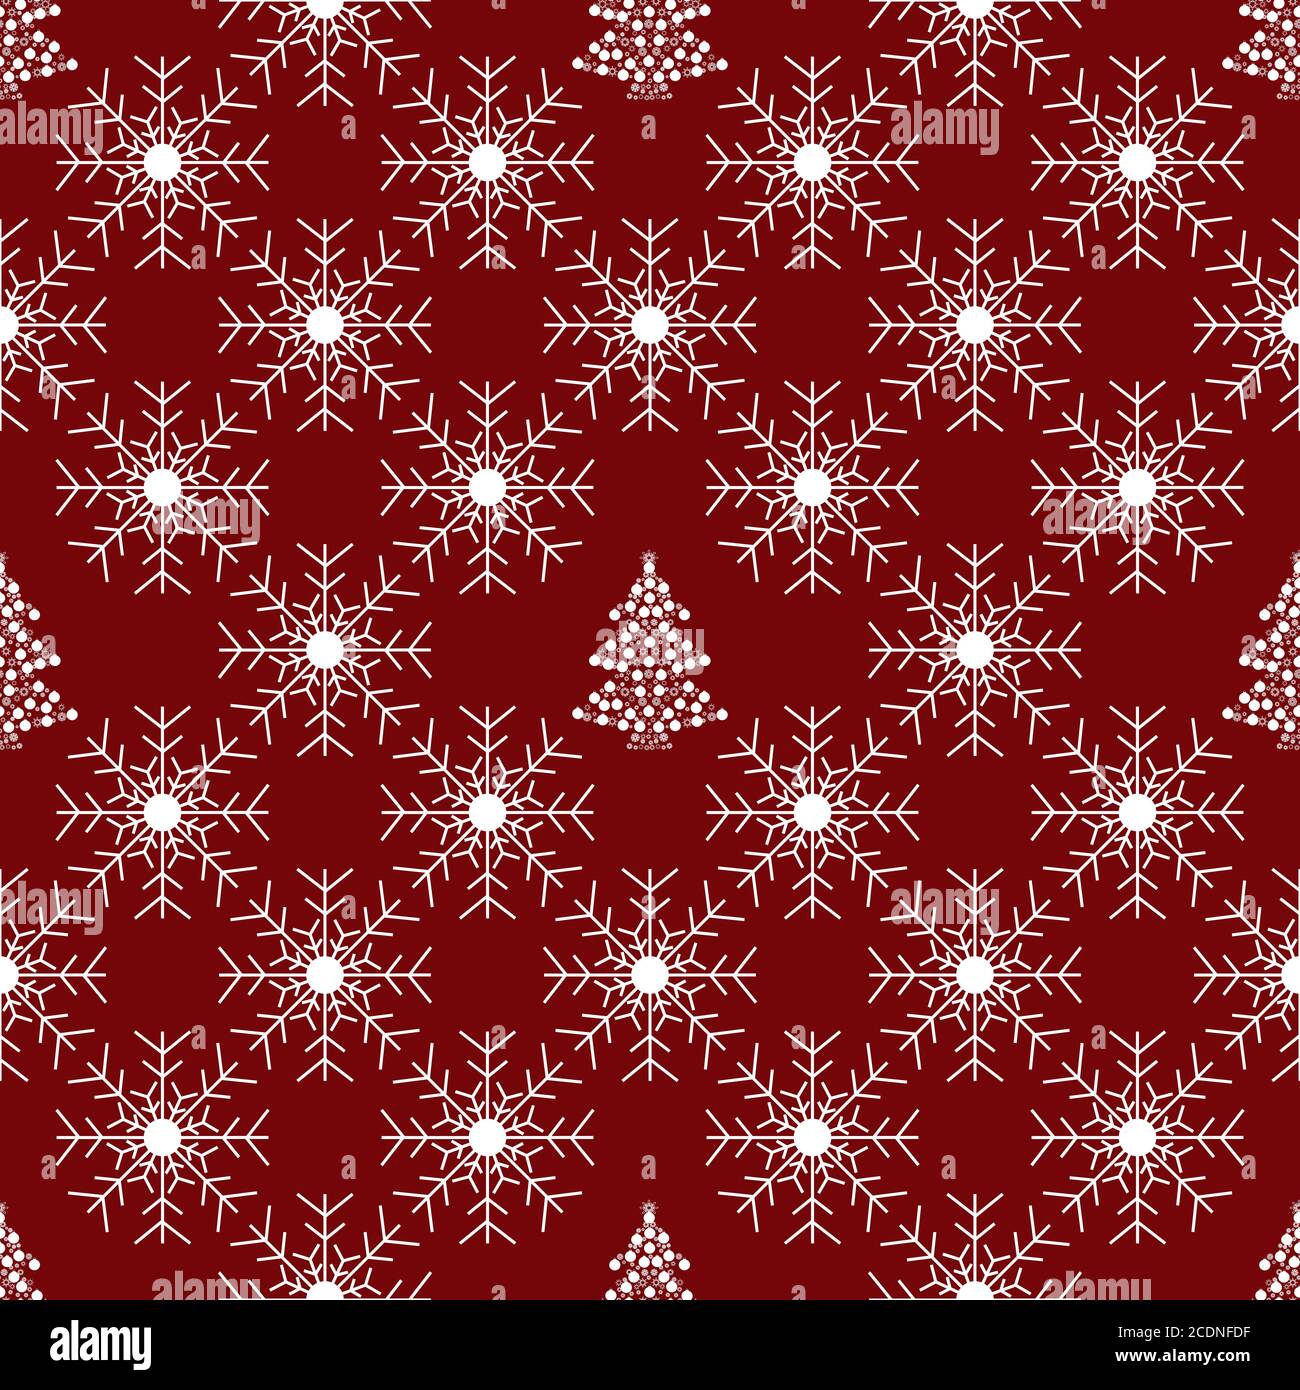 Weihnachtsbaum und rote Schneeflocke nahtlose Muster Stockfoto